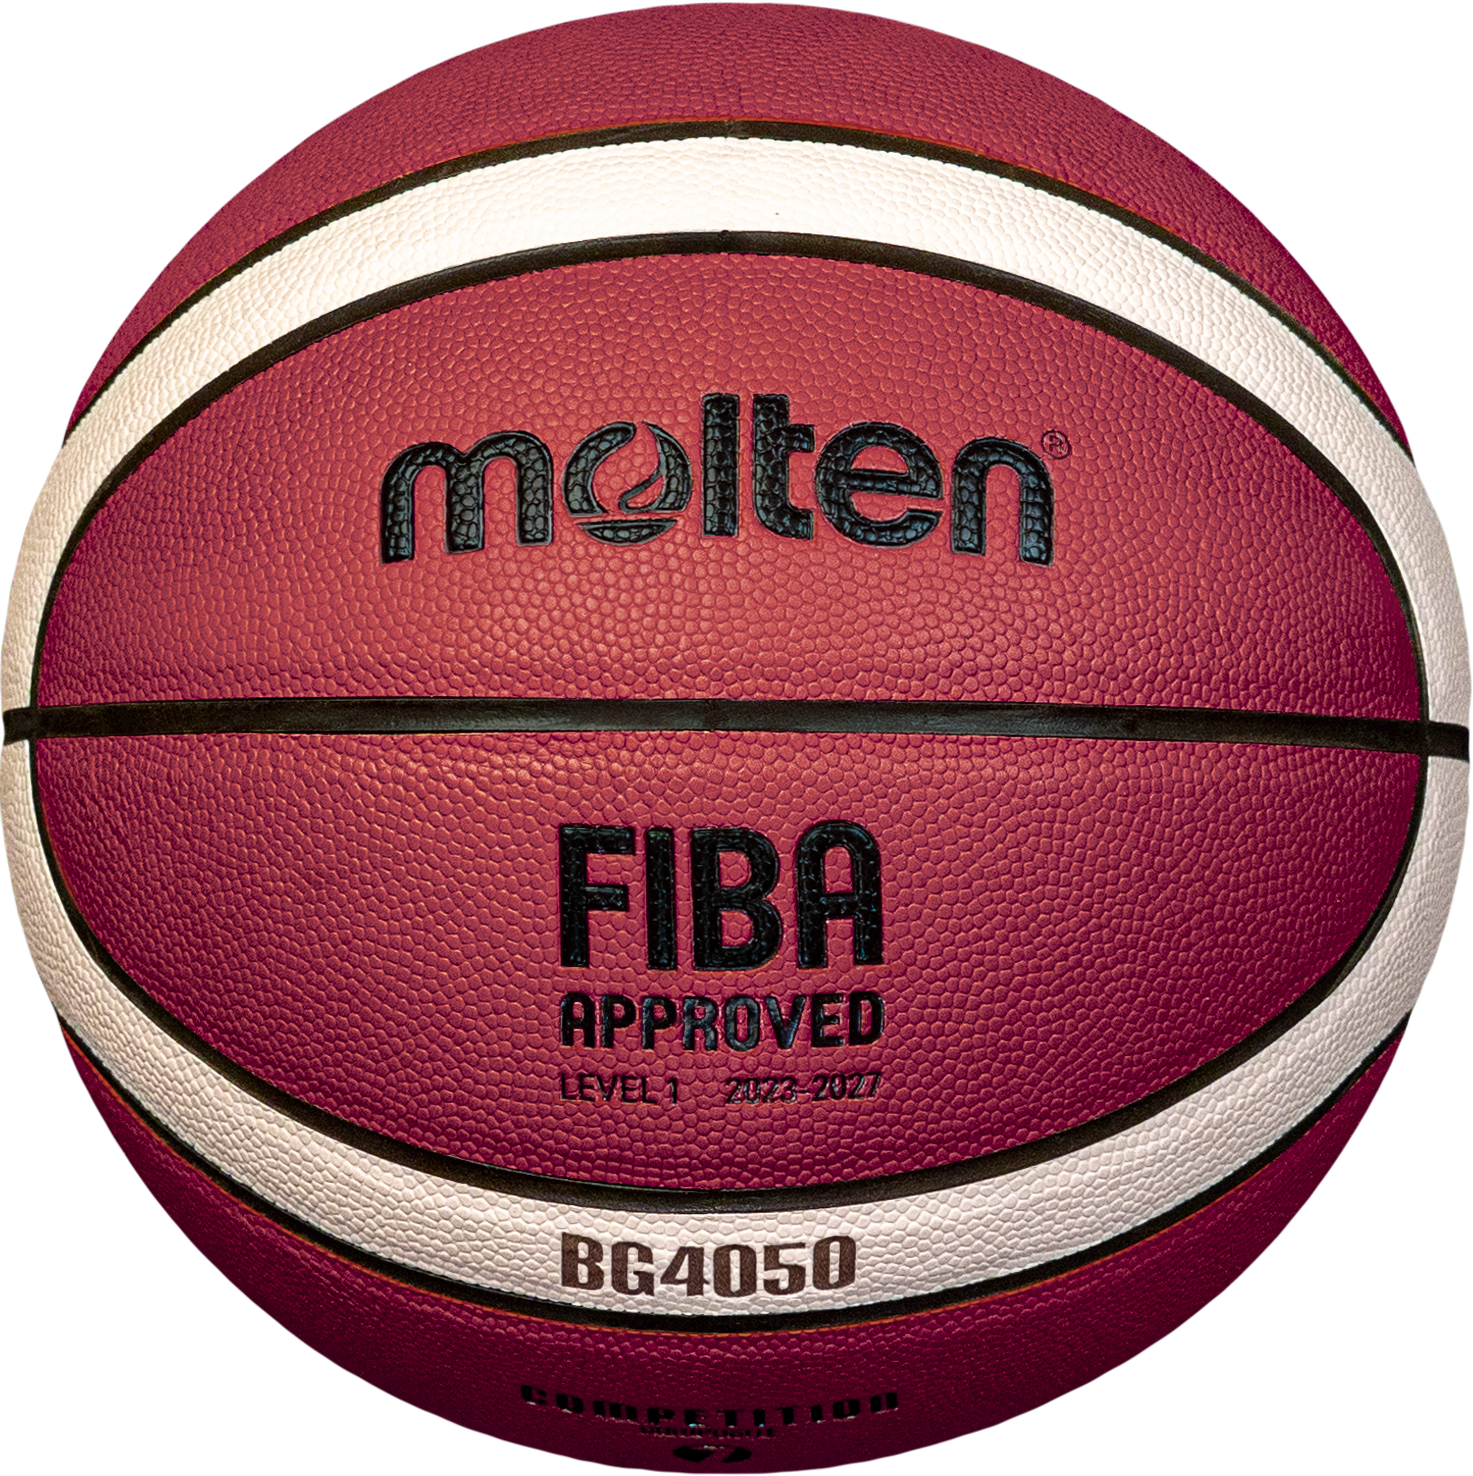 Molten Basketball B6G4050